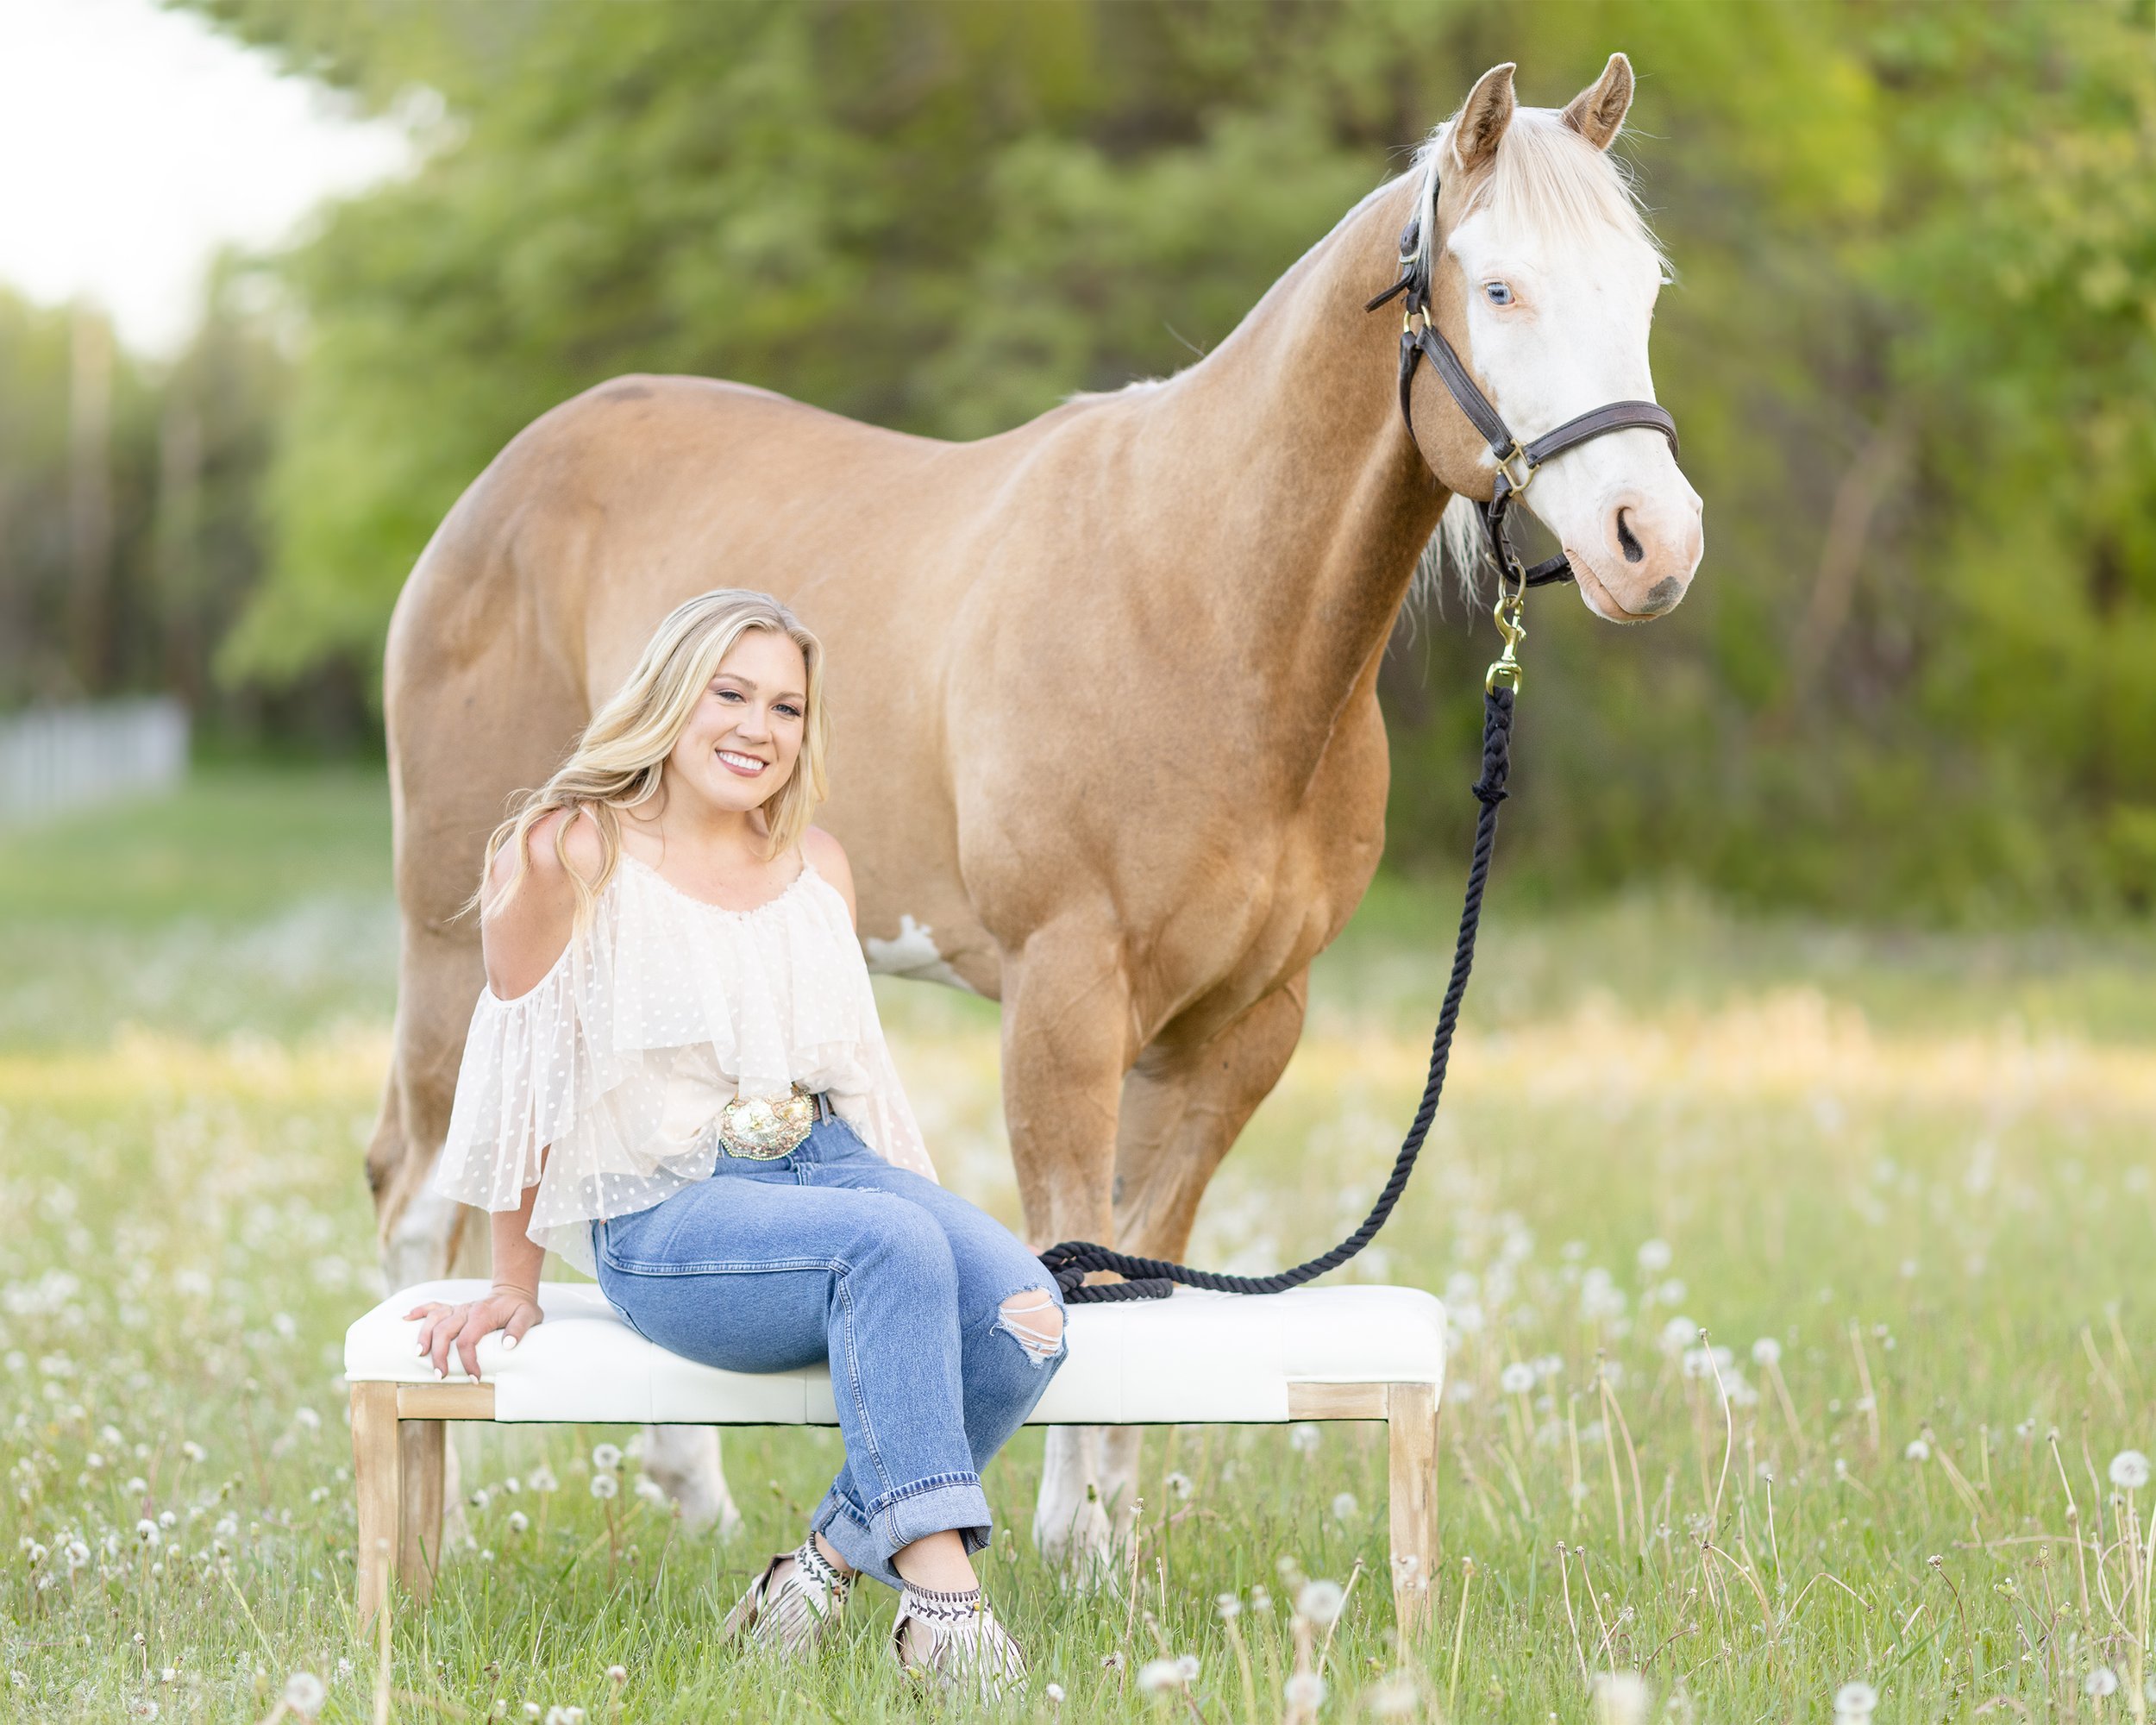 Horse &amp; Rider photoshoot with Miranda Lambert Vibes